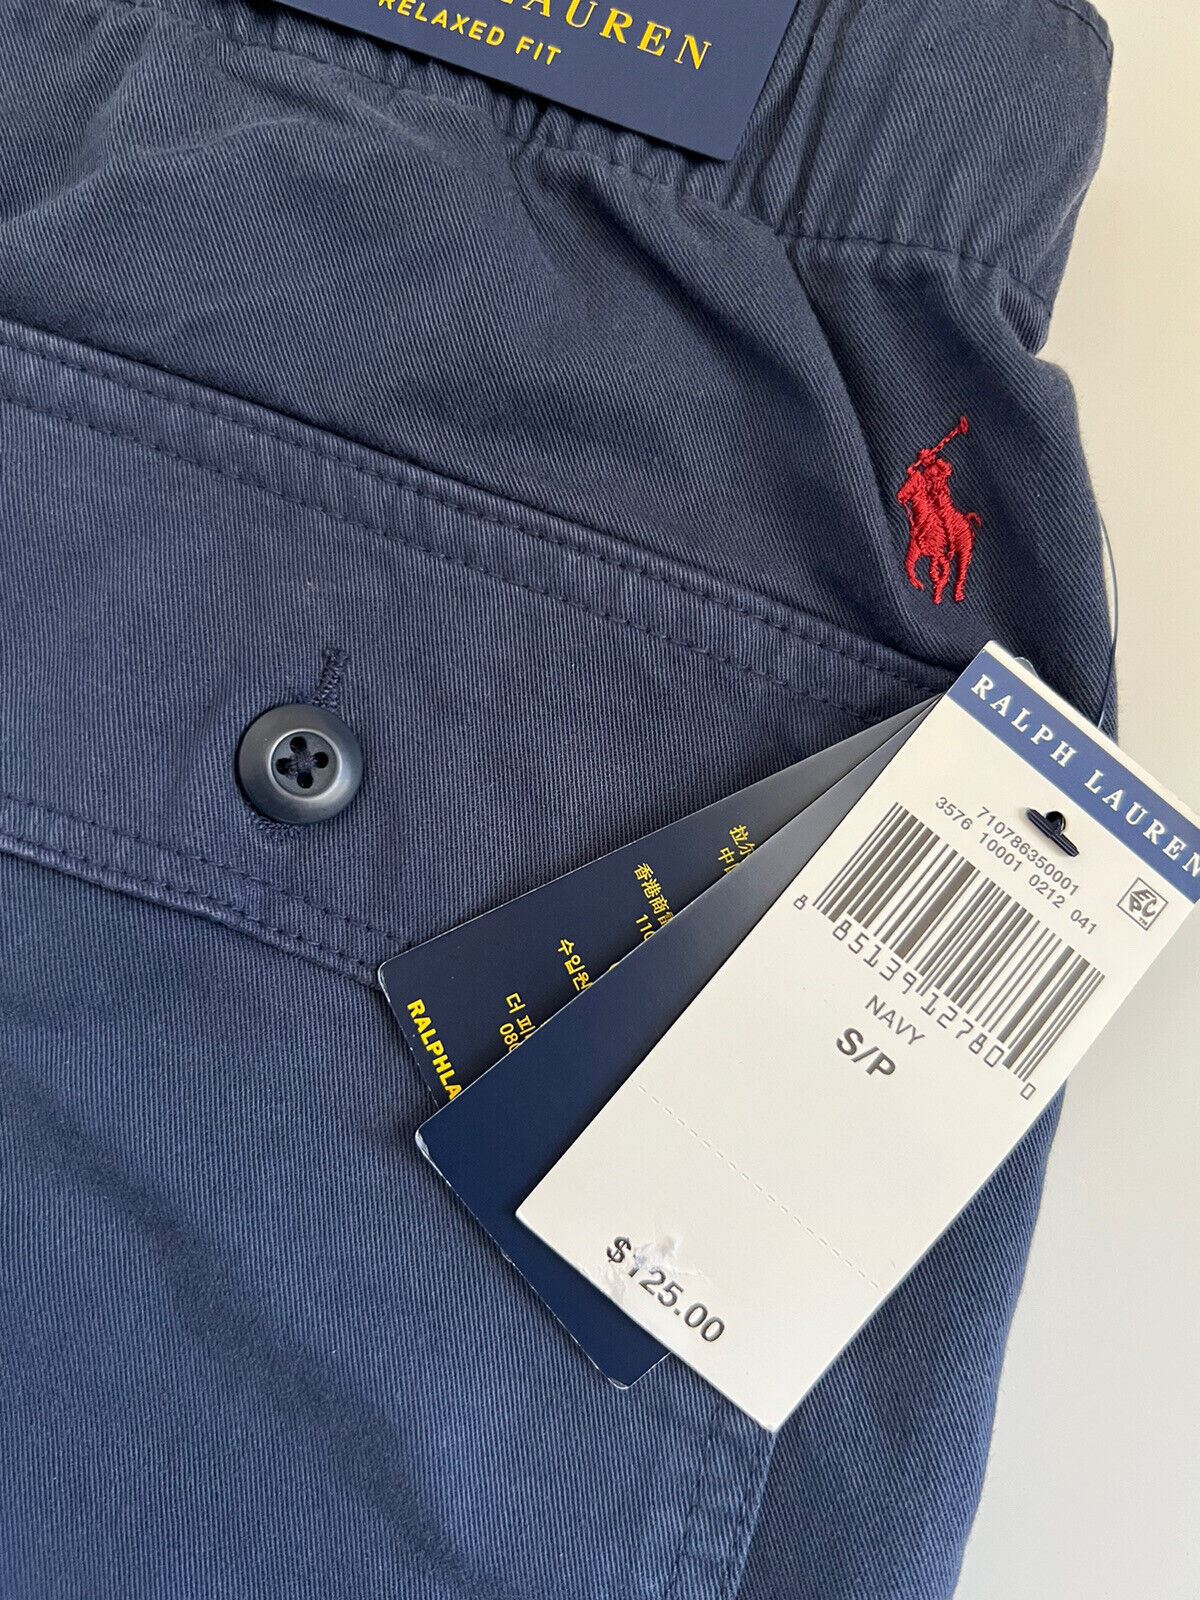 Мужские синие шорты Polo Ralph Lauren, маленький размер, NWT 125 долларов США